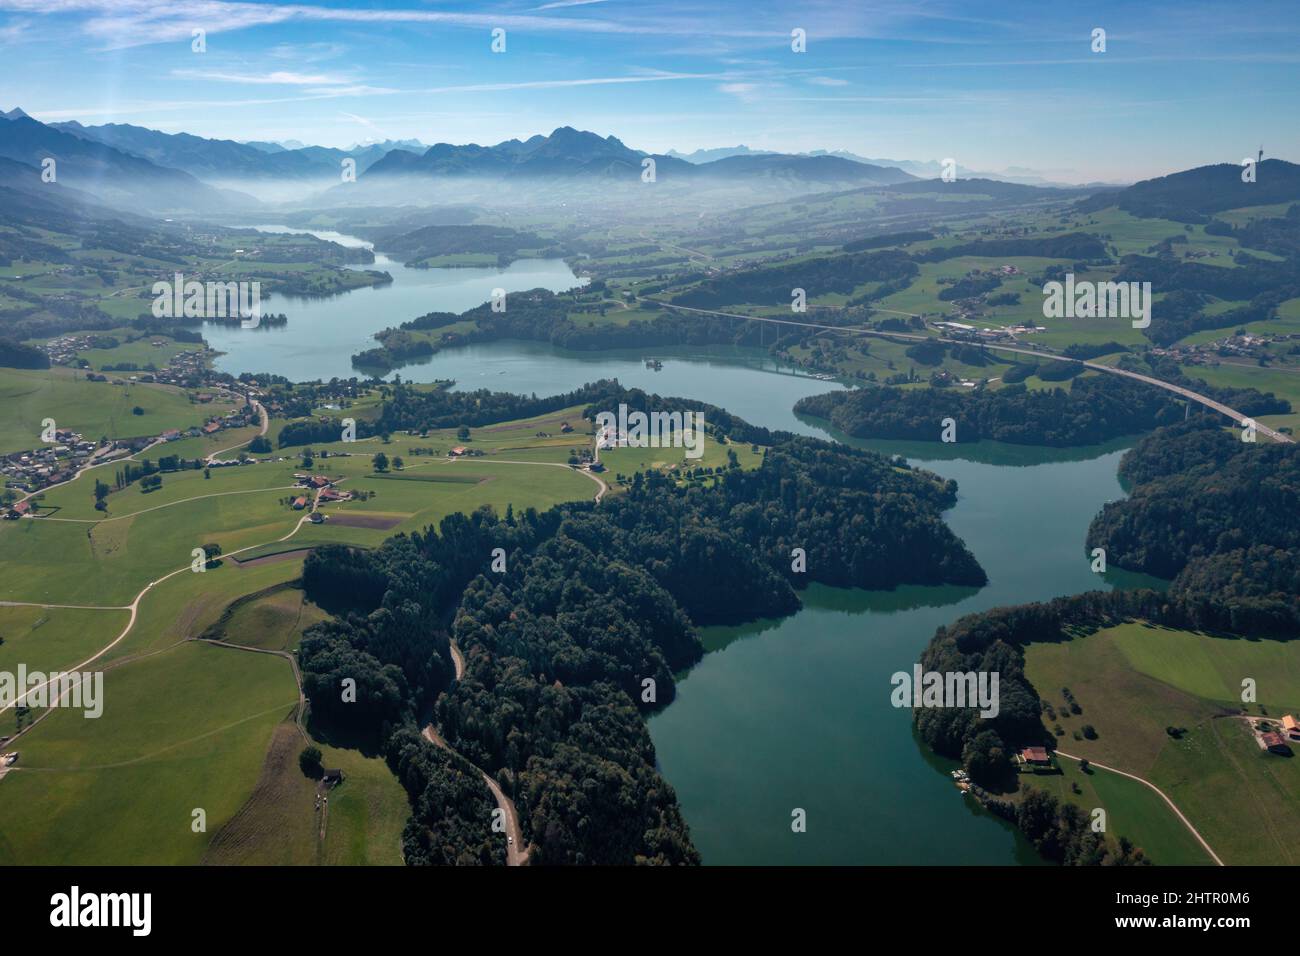 Vue aérienne du Lac de la Gruyère, un lac du canton de Fribourg, Suisse. Le  lac serpente à travers les collines de la région et est entouré d'une  couche d'arbres. Photo de